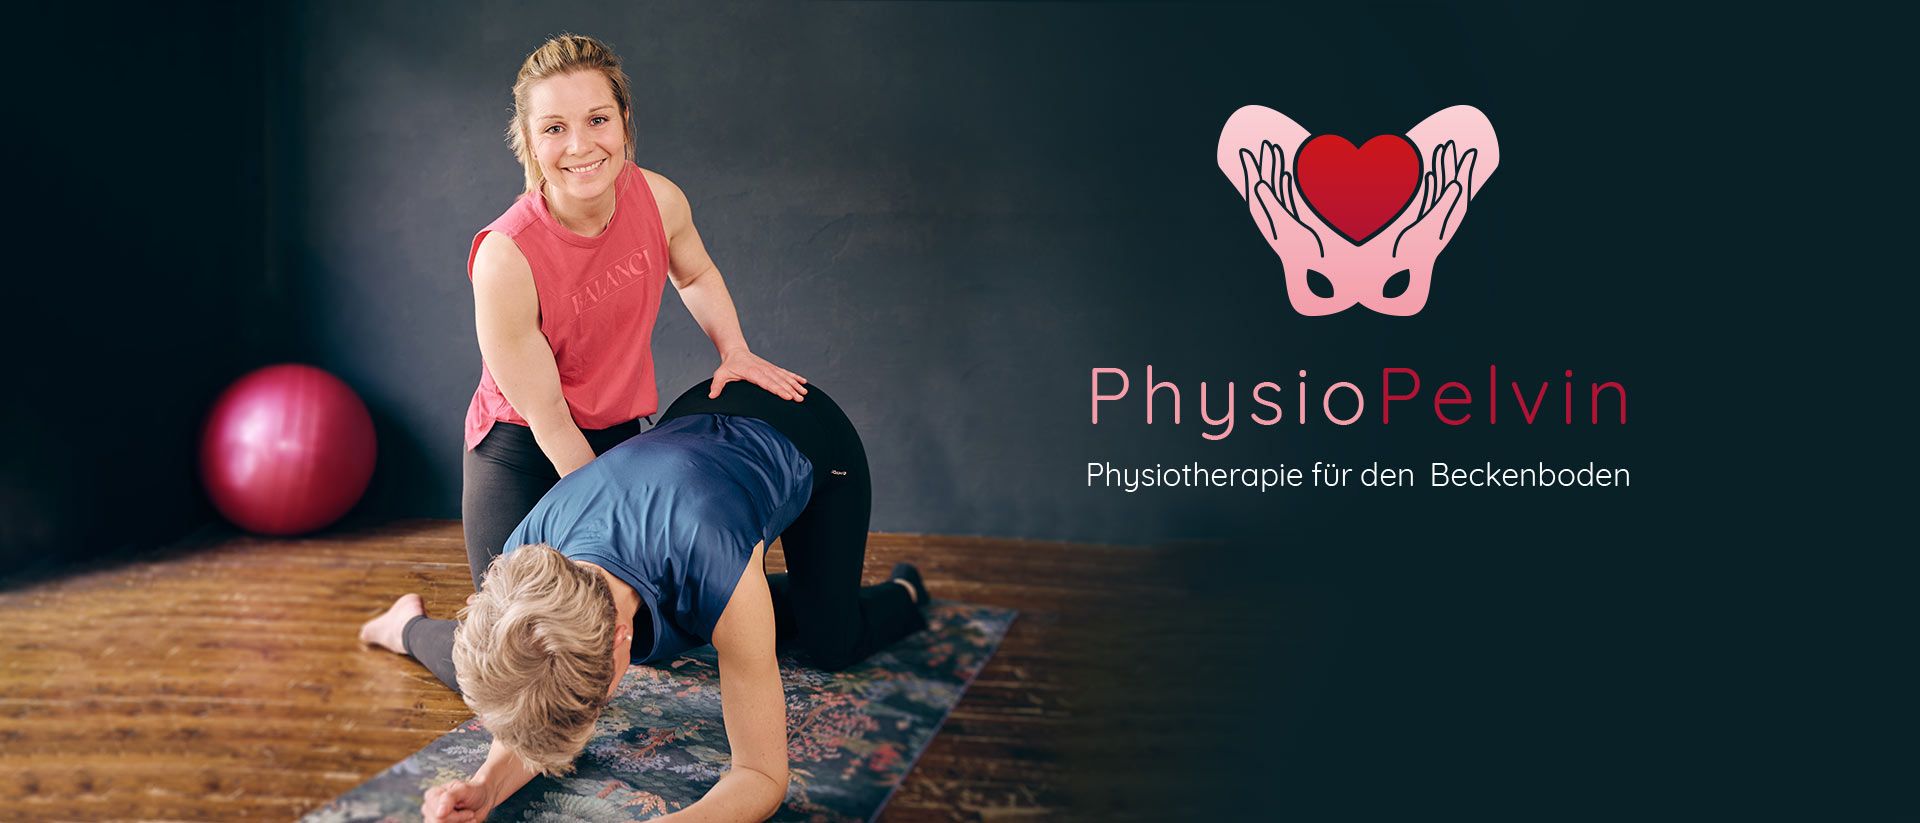 Physio Pelvin - Physiotherapie für den Beckenboden